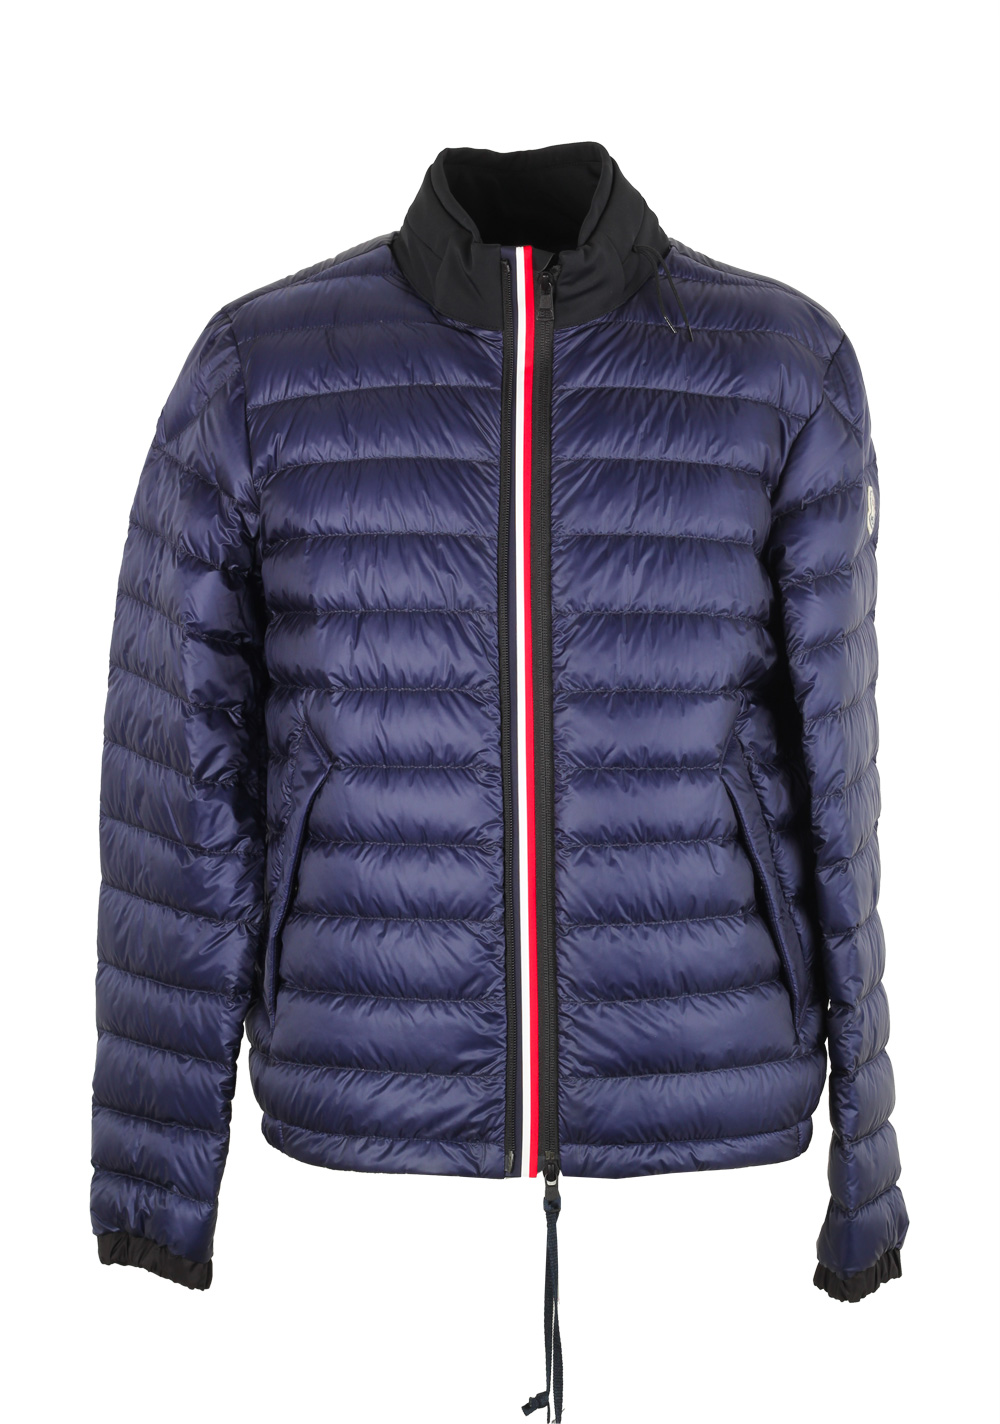 Moncler Blue Arroux Jacket Coat Size 3 